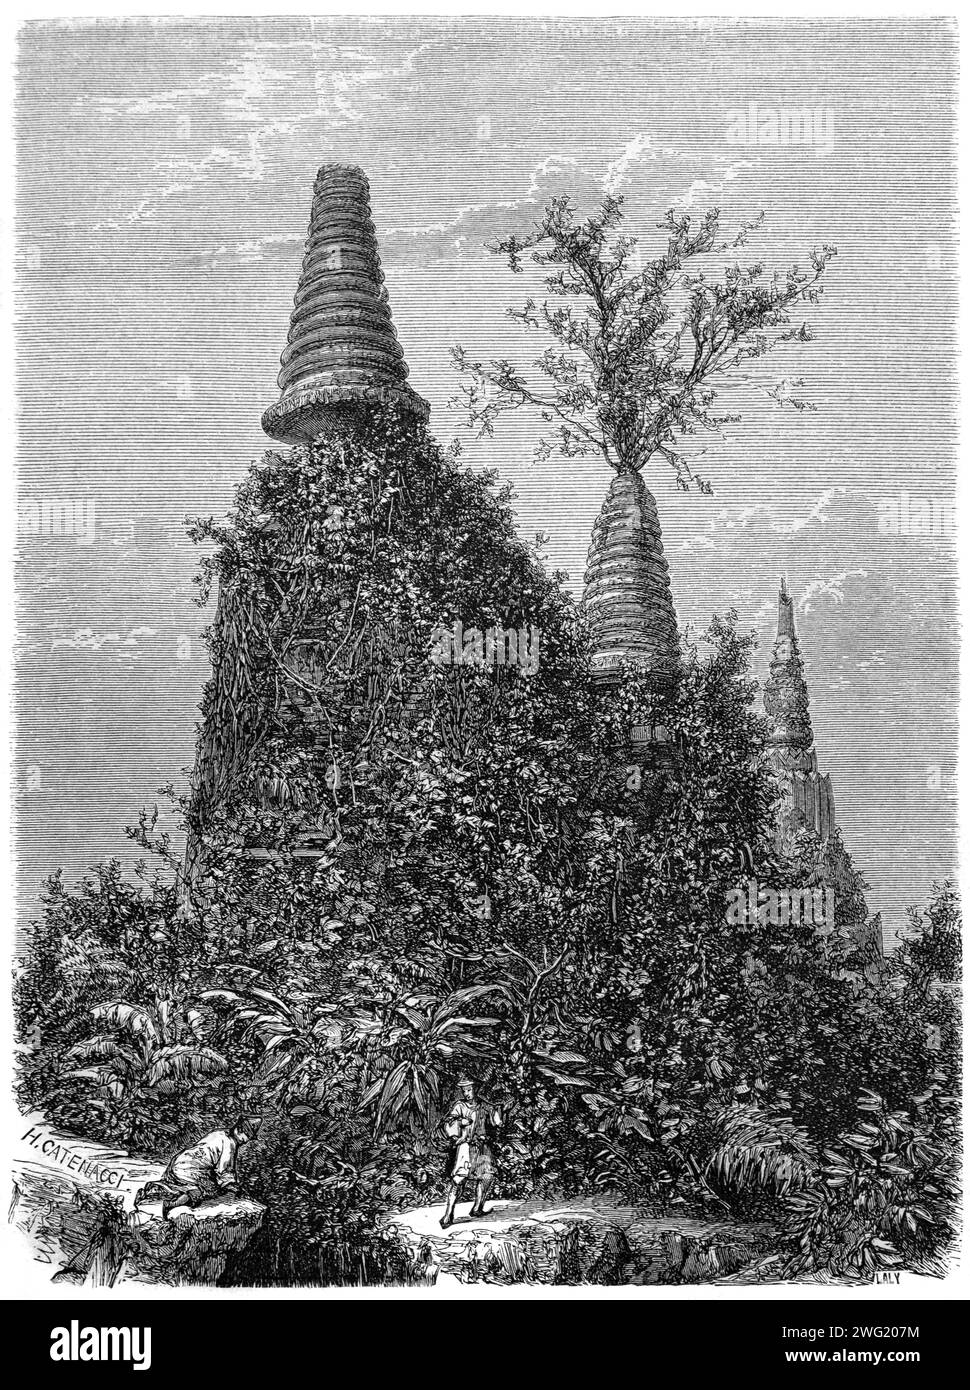 Ruines couvertes de Creepers & Ivy du temple Wat Phra Sri Sanphet (avant restauration) au parc historique Ayutthaya Thaïlande. Gravure vintage ou historique ou illustration 1863 Banque D'Images